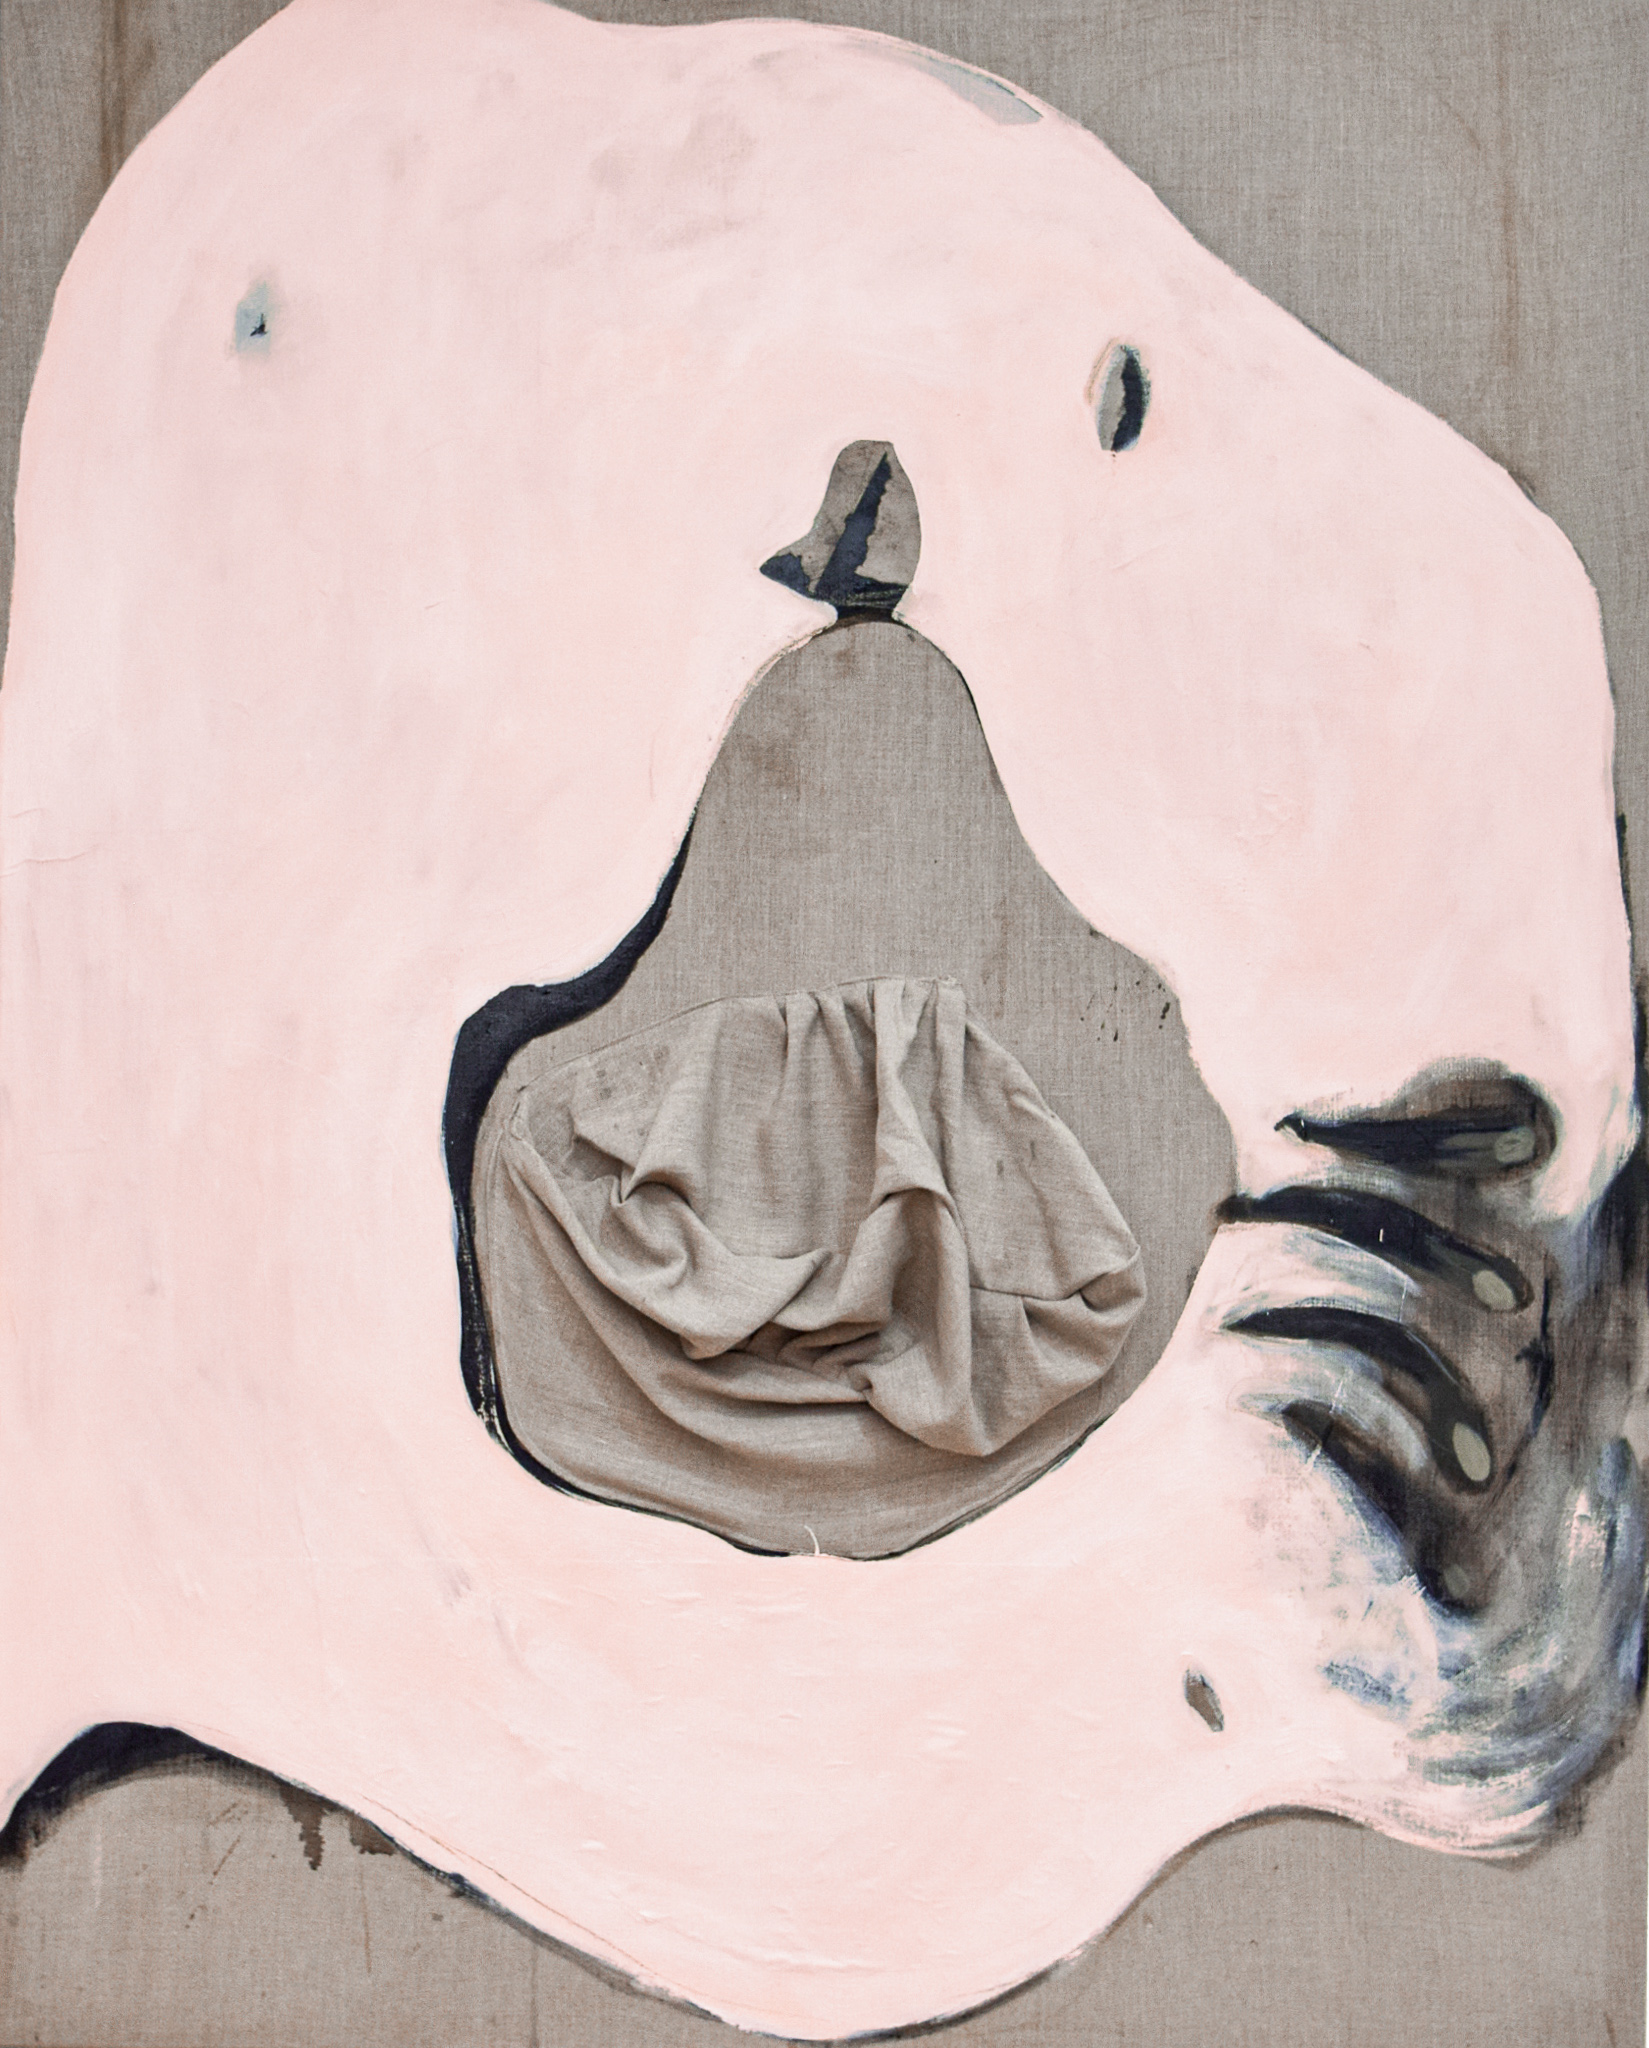 Josefina alanko ghost n°2 meditating gutai 2023 acryl leinen papier pastell 150 x 120 cm photo josefina alanko